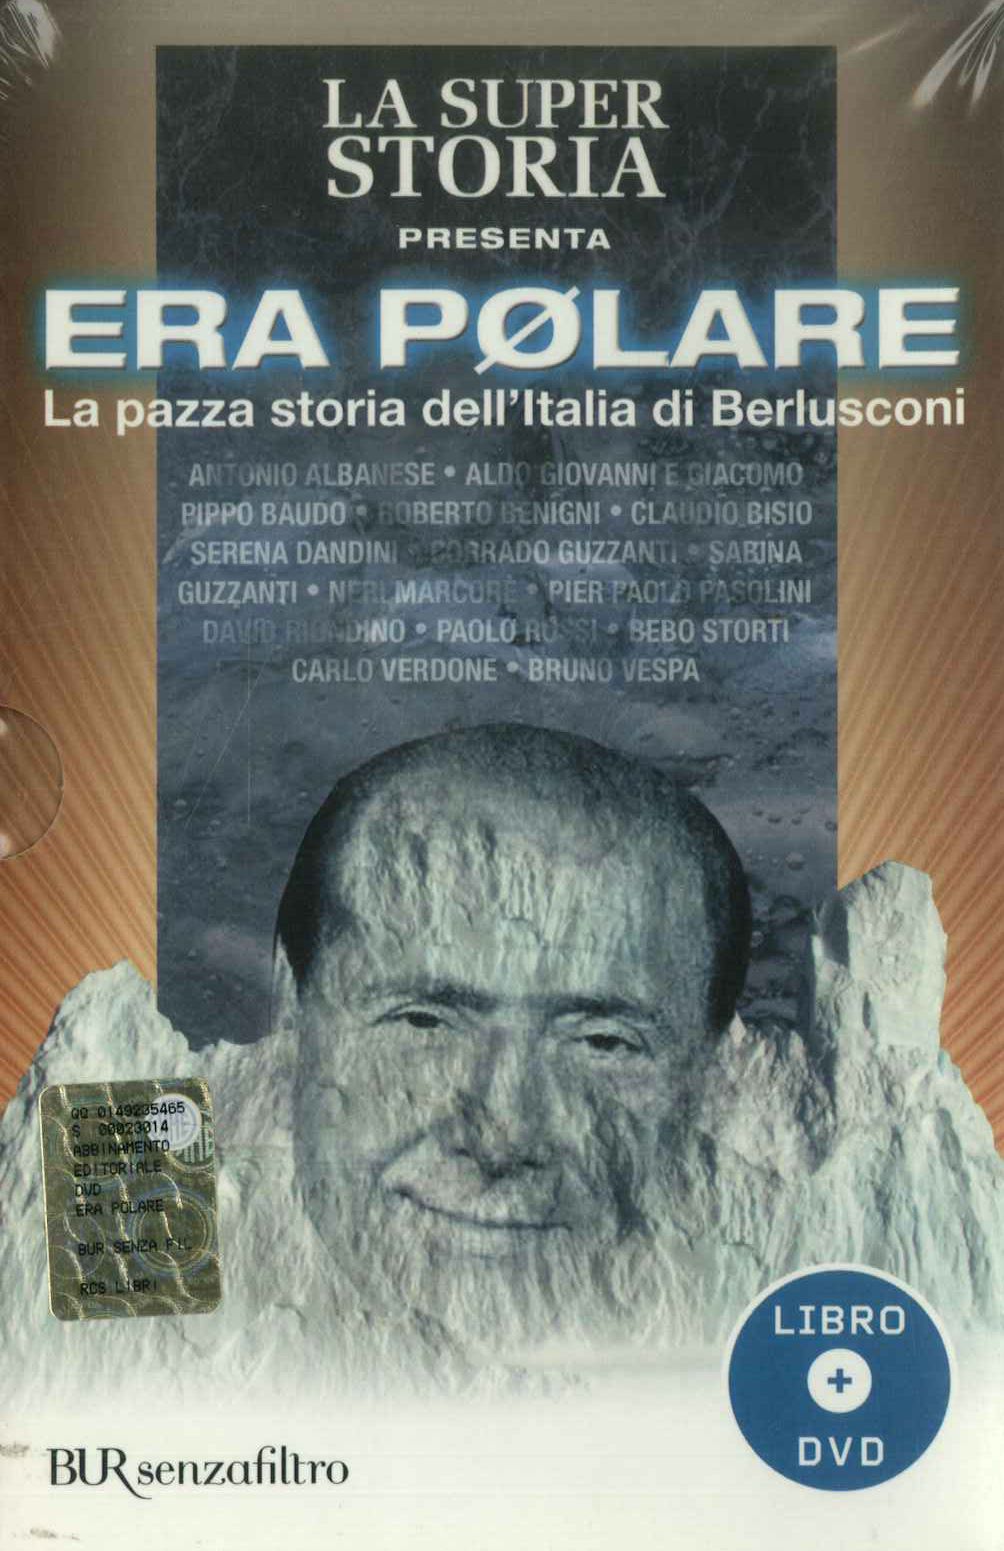 Era Polare. La pazza storia dell'Italia di Berlusconi